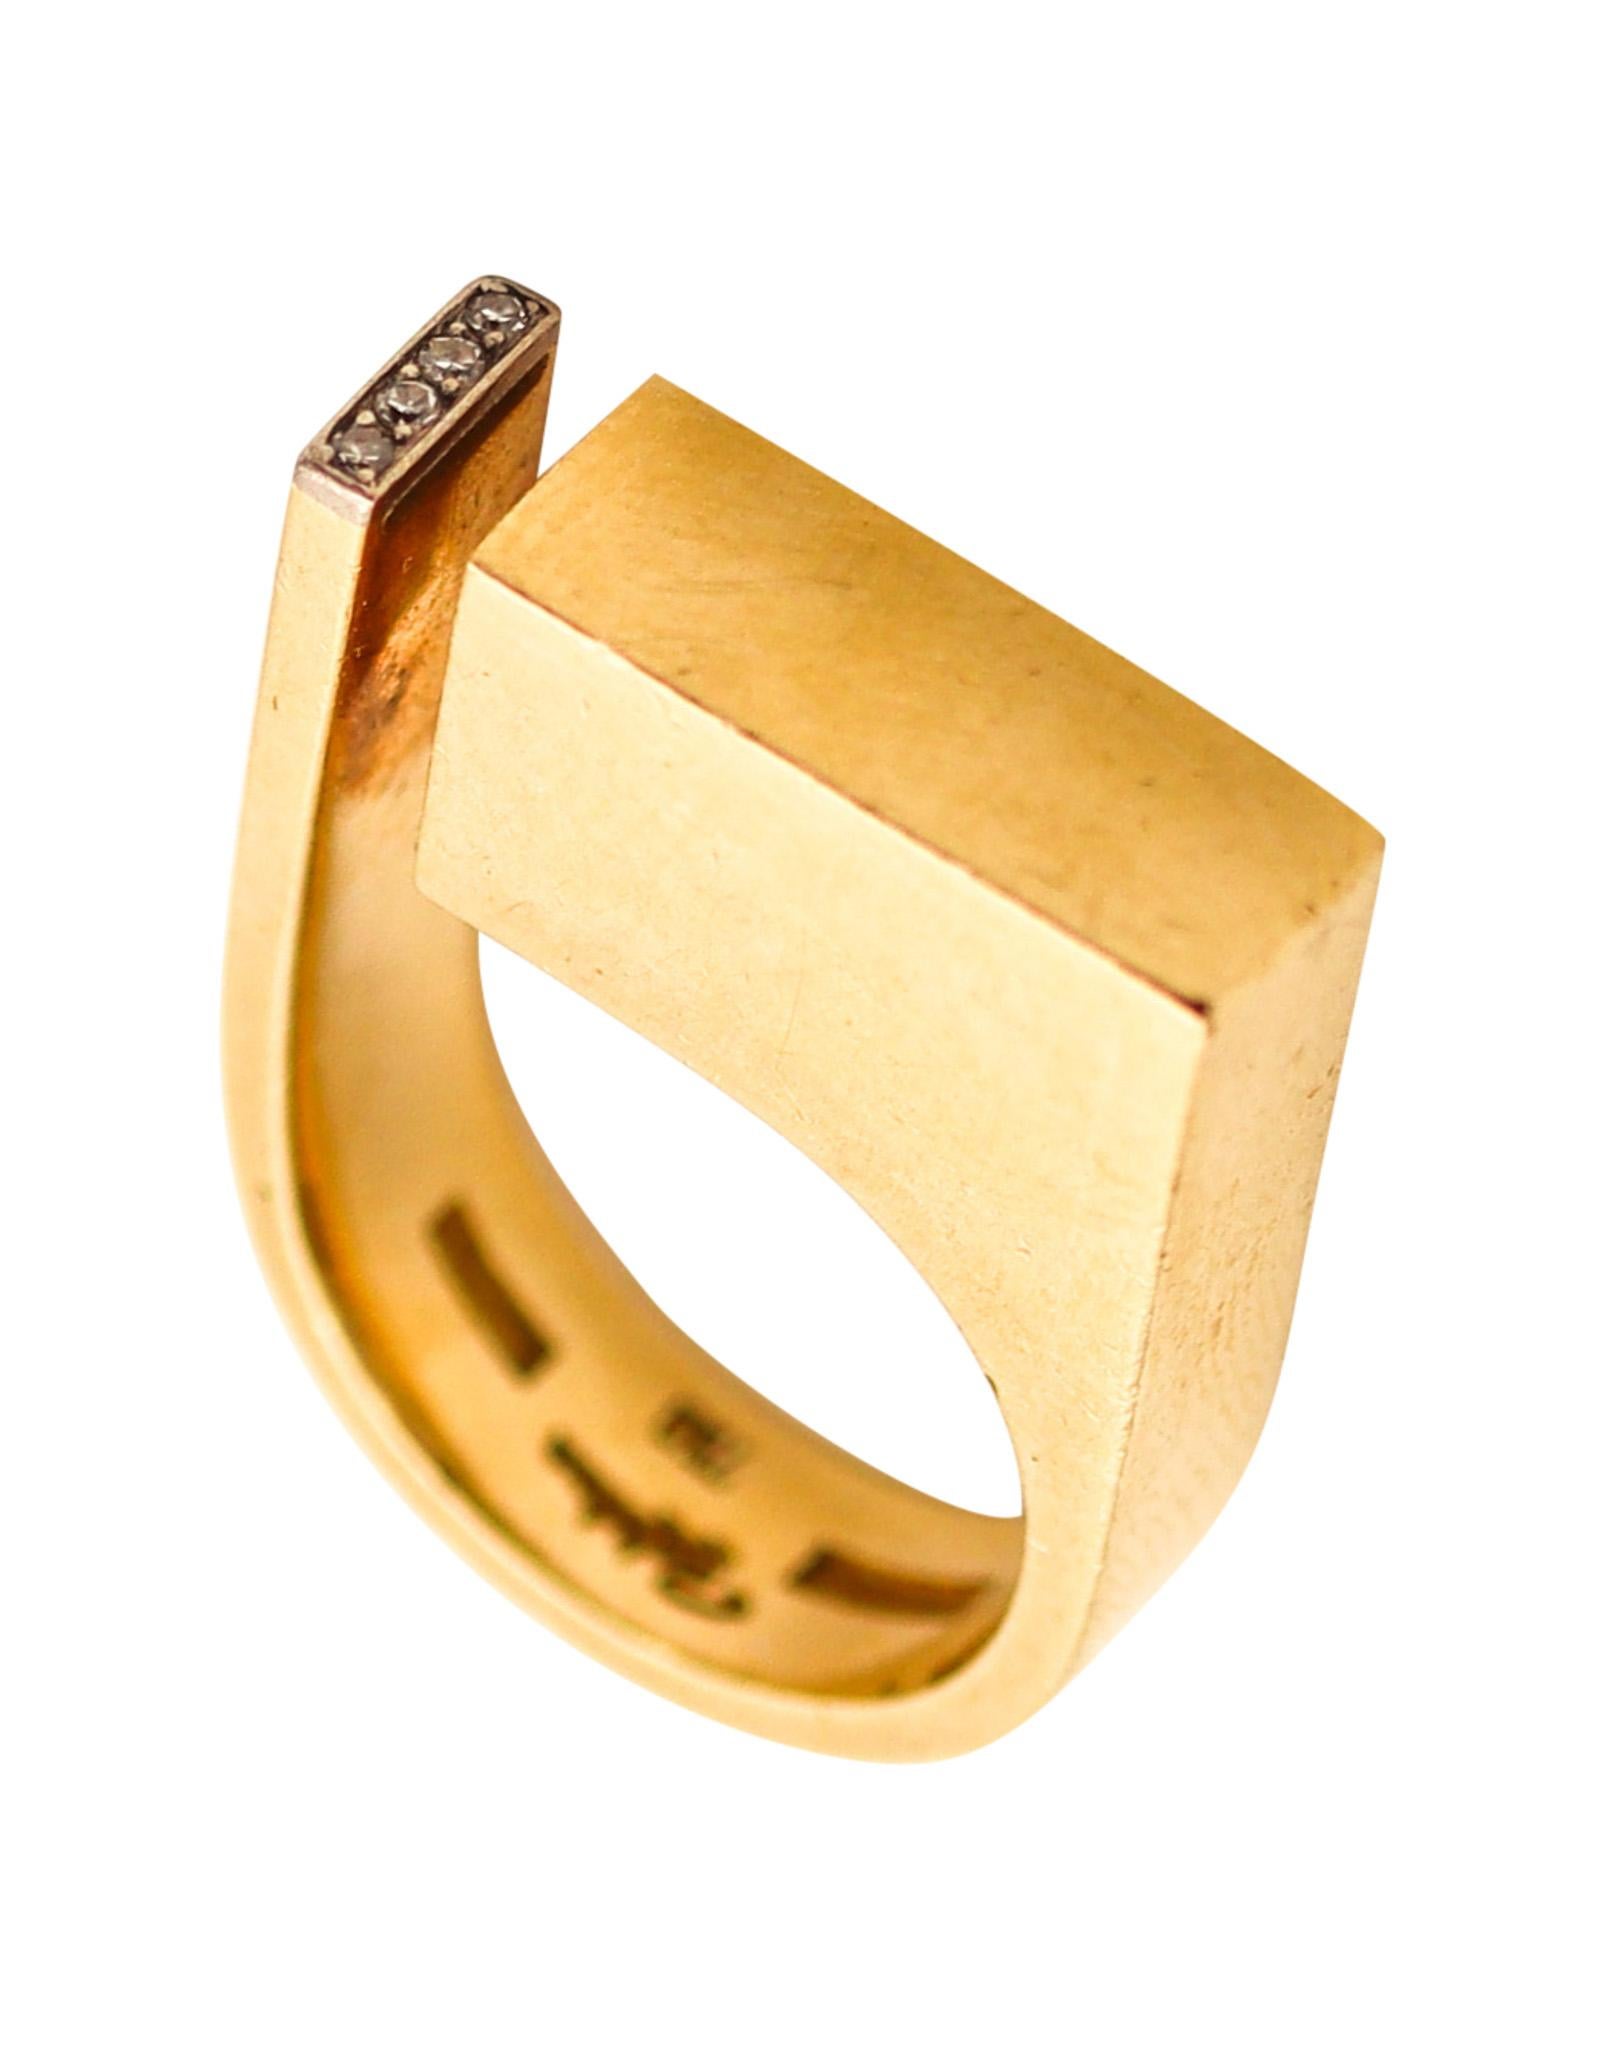 Geometrischer Ring, entworfen von Rey Urban (1929-2015).

Außergewöhnliches skulpturales Stück, das 1969 in Dänemark von dem Künstler und Goldschmied Rey Urban geschaffen wurde. Dieser skandinavische Ring ist eine Rarität, denn er ist eines der